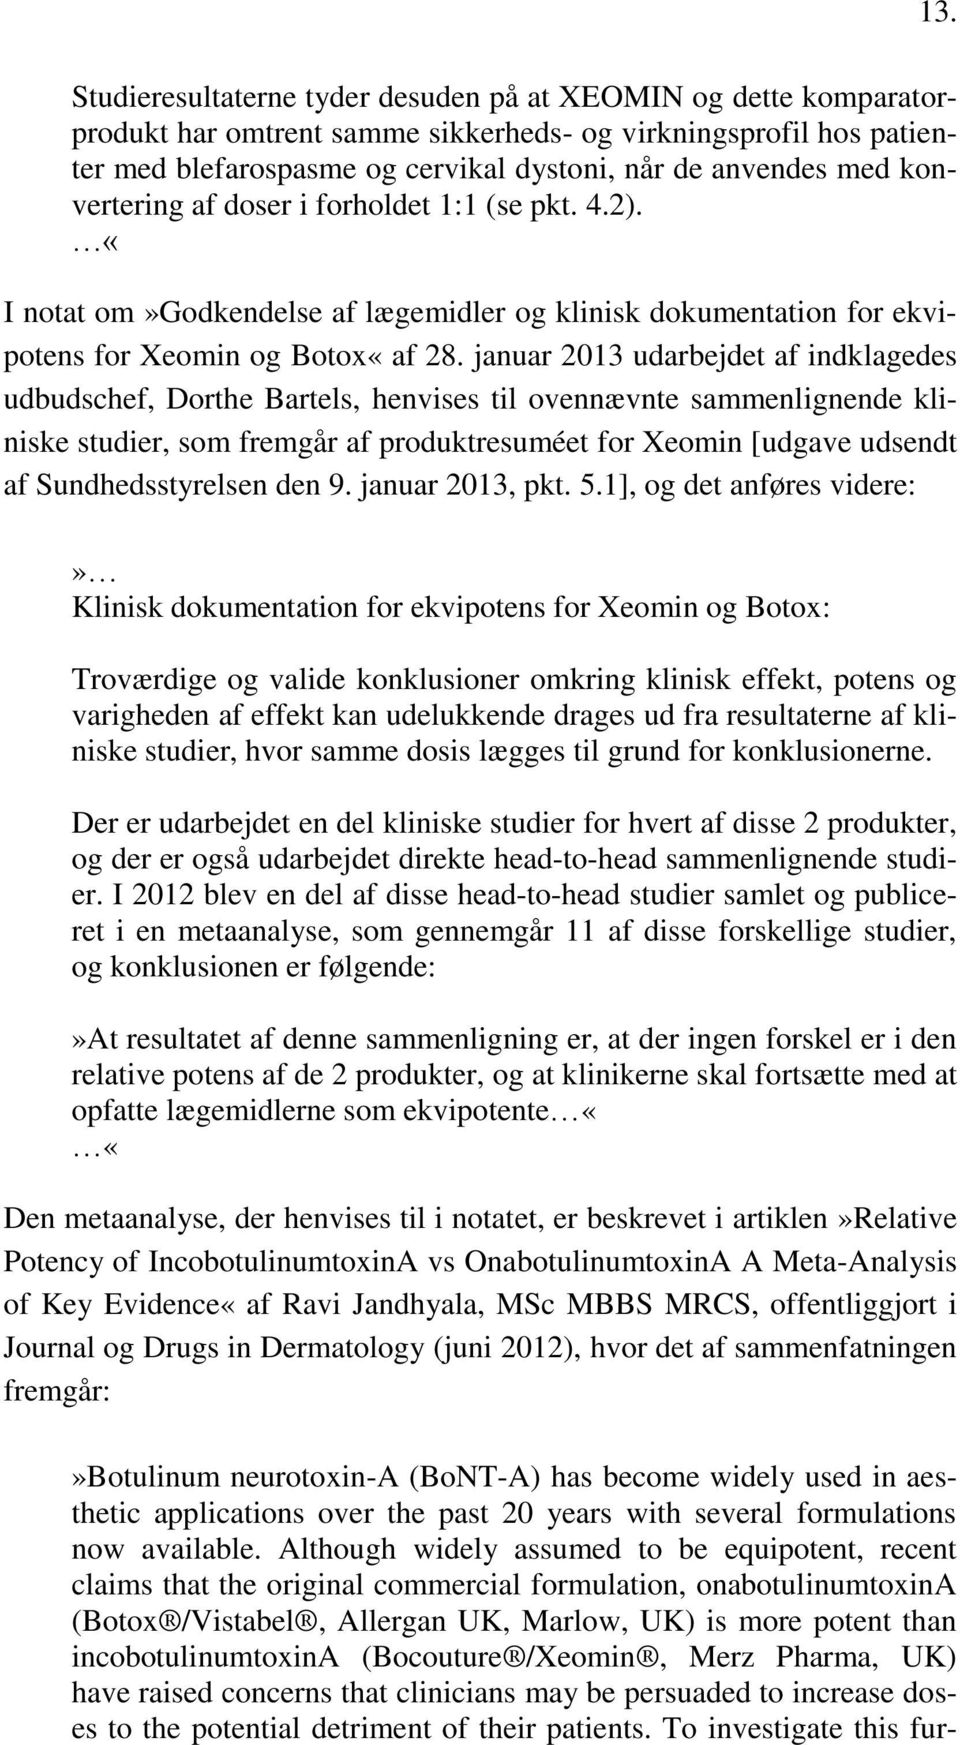 januar 2013 udarbejdet af indklagedes udbudschef, Dorthe Bartels, henvises til ovennævnte sammenlignende kliniske studier, som fremgår af produktresuméet for Xeomin [udgave udsendt af